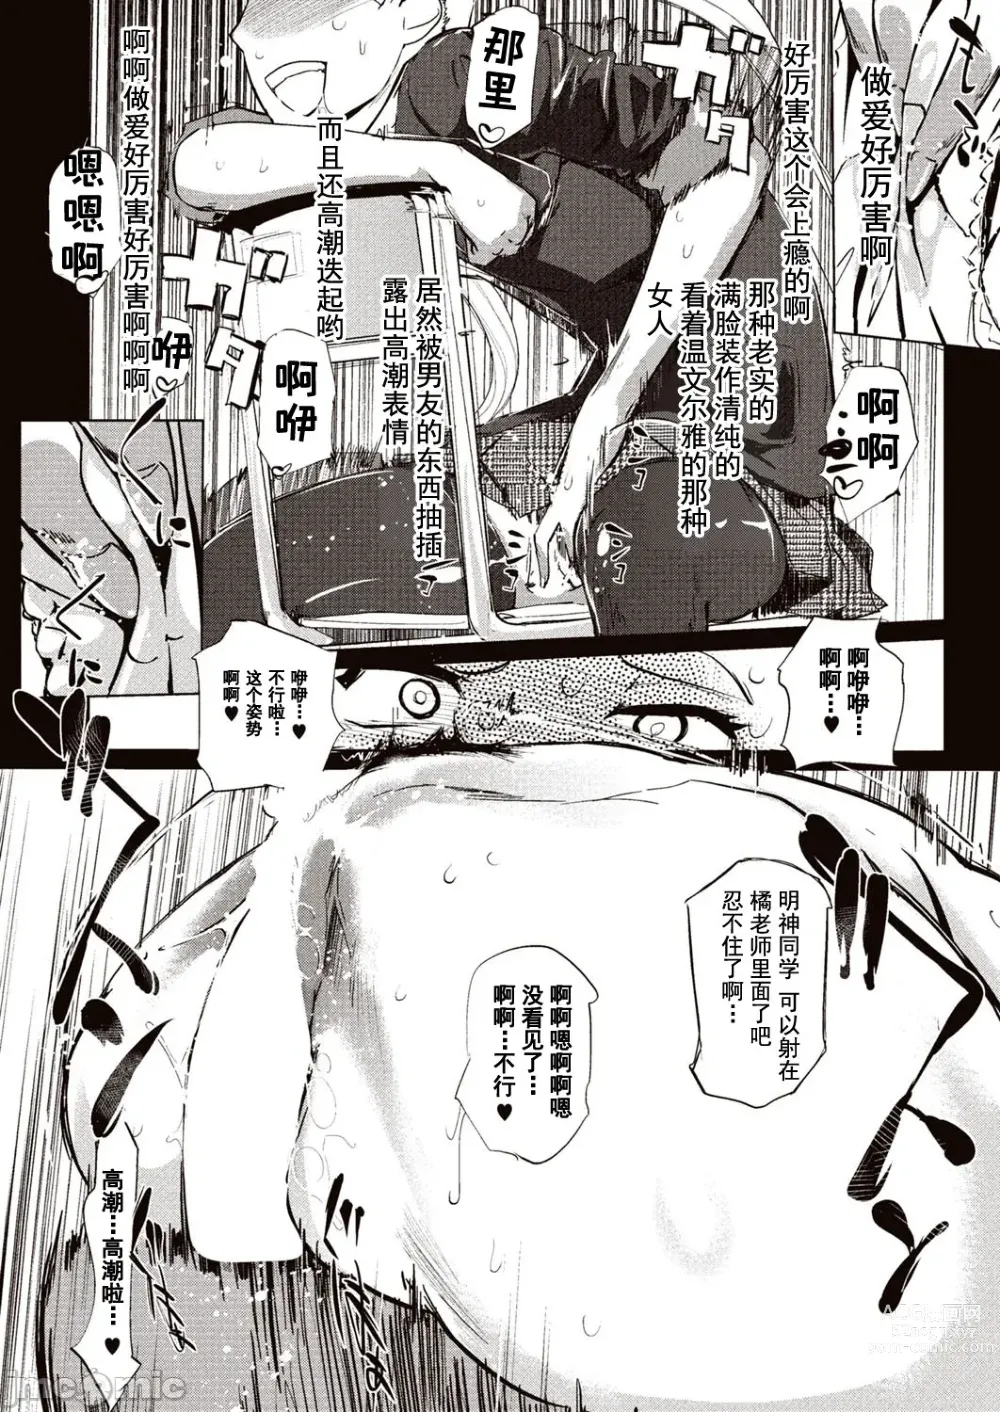 Page 68 of manga 賣作社團的招待券